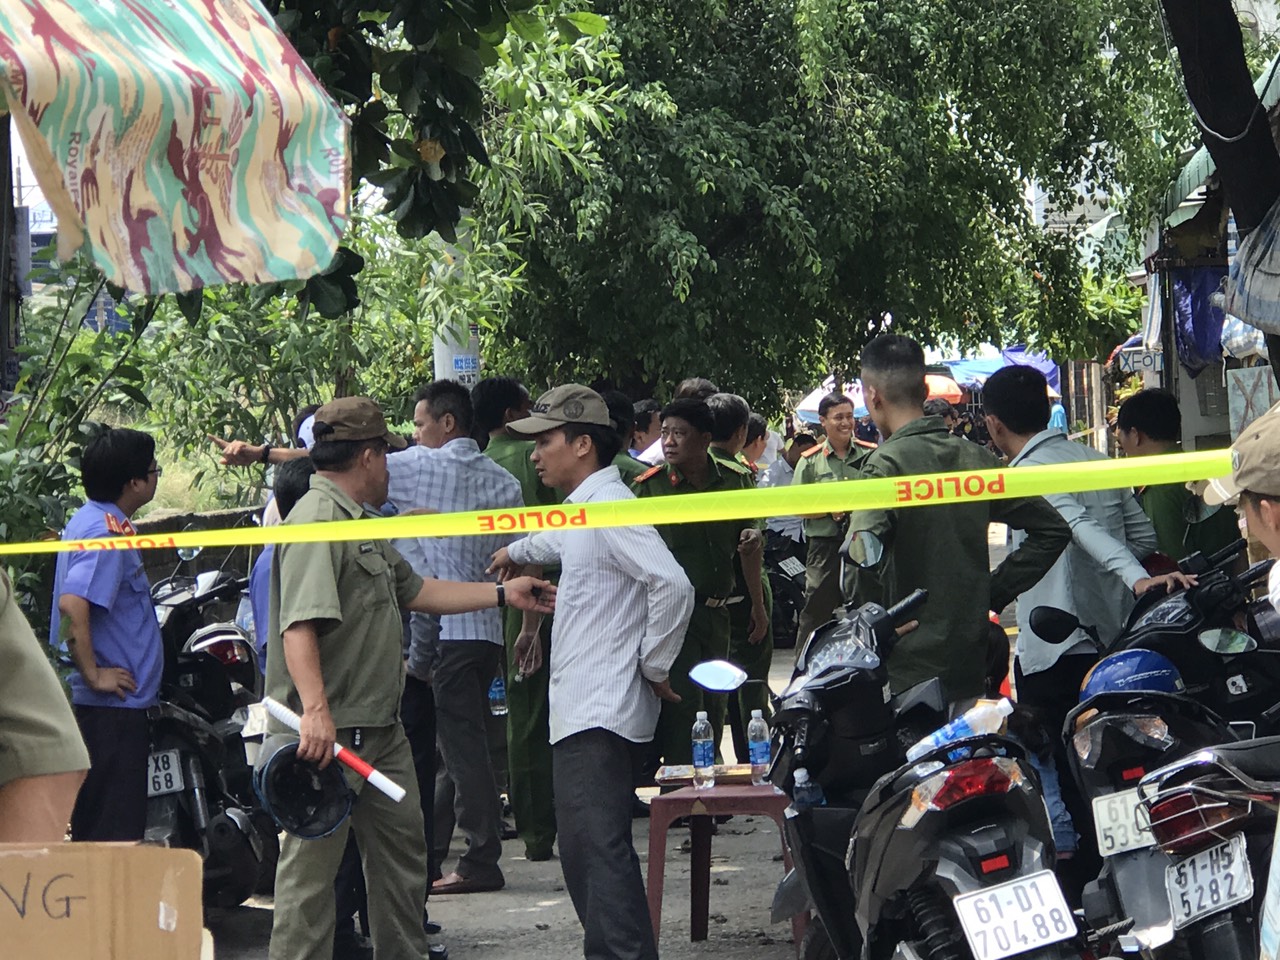 Bình Dương: Thai phụ cùng con gái 3 tuổi và chồng tử vong trong căn phòng trọ khóa kín - Ảnh 2